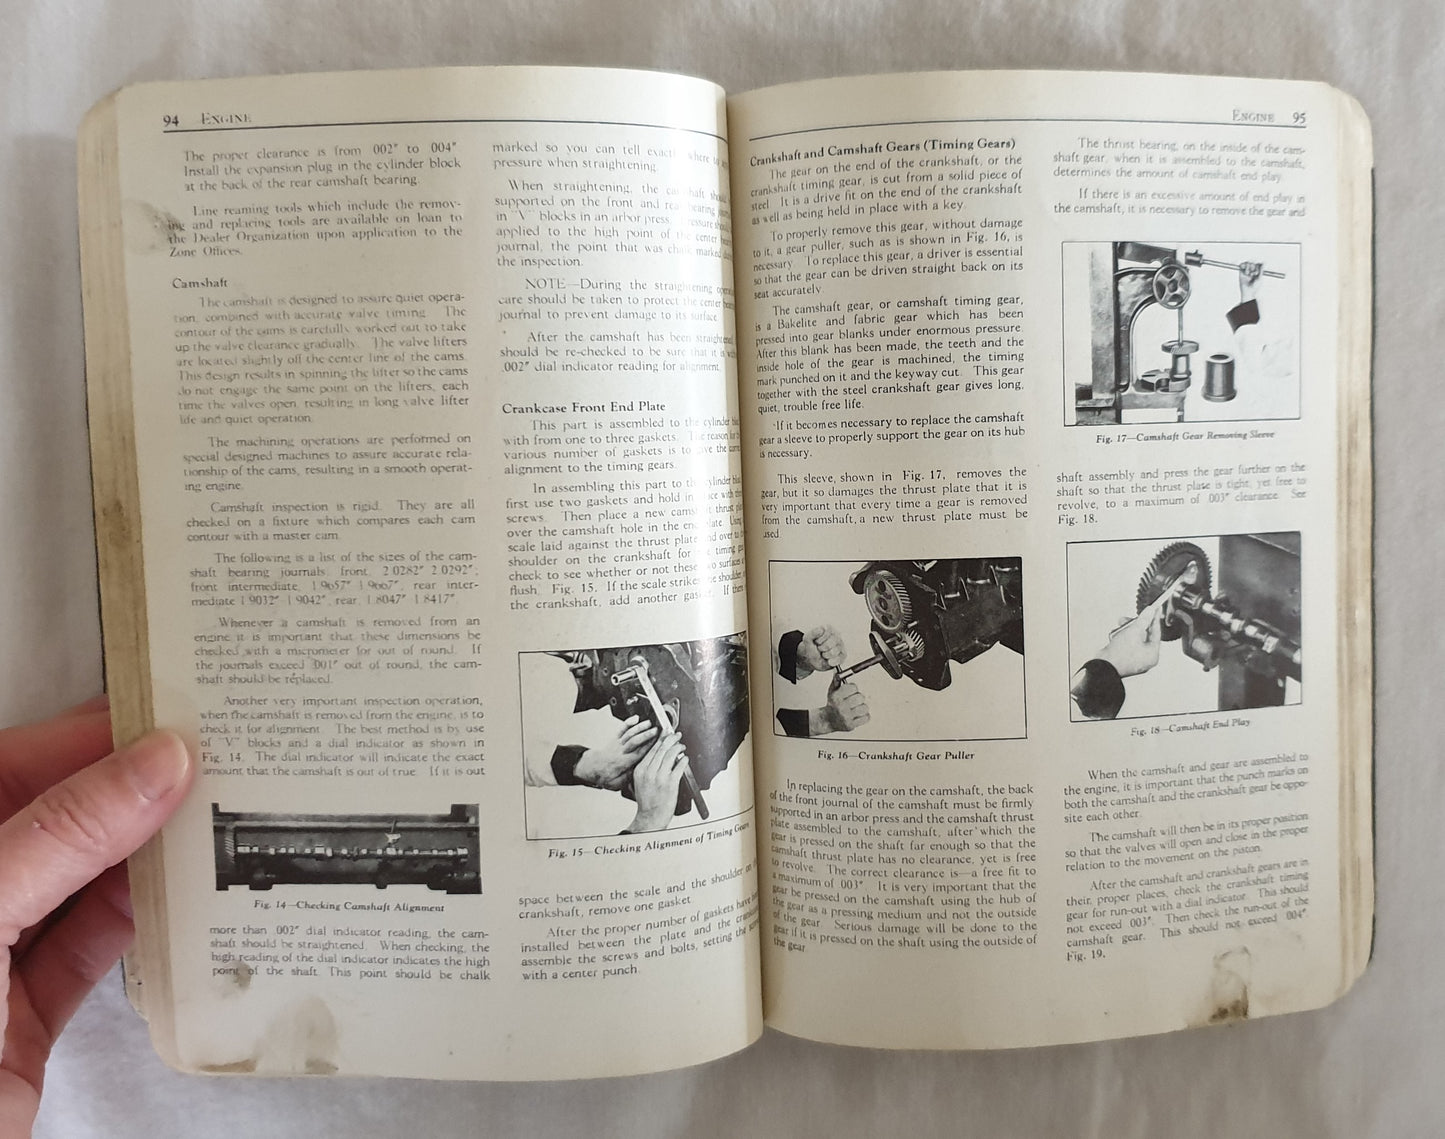 Chevrolet 1937 Shop Manual - General Motors